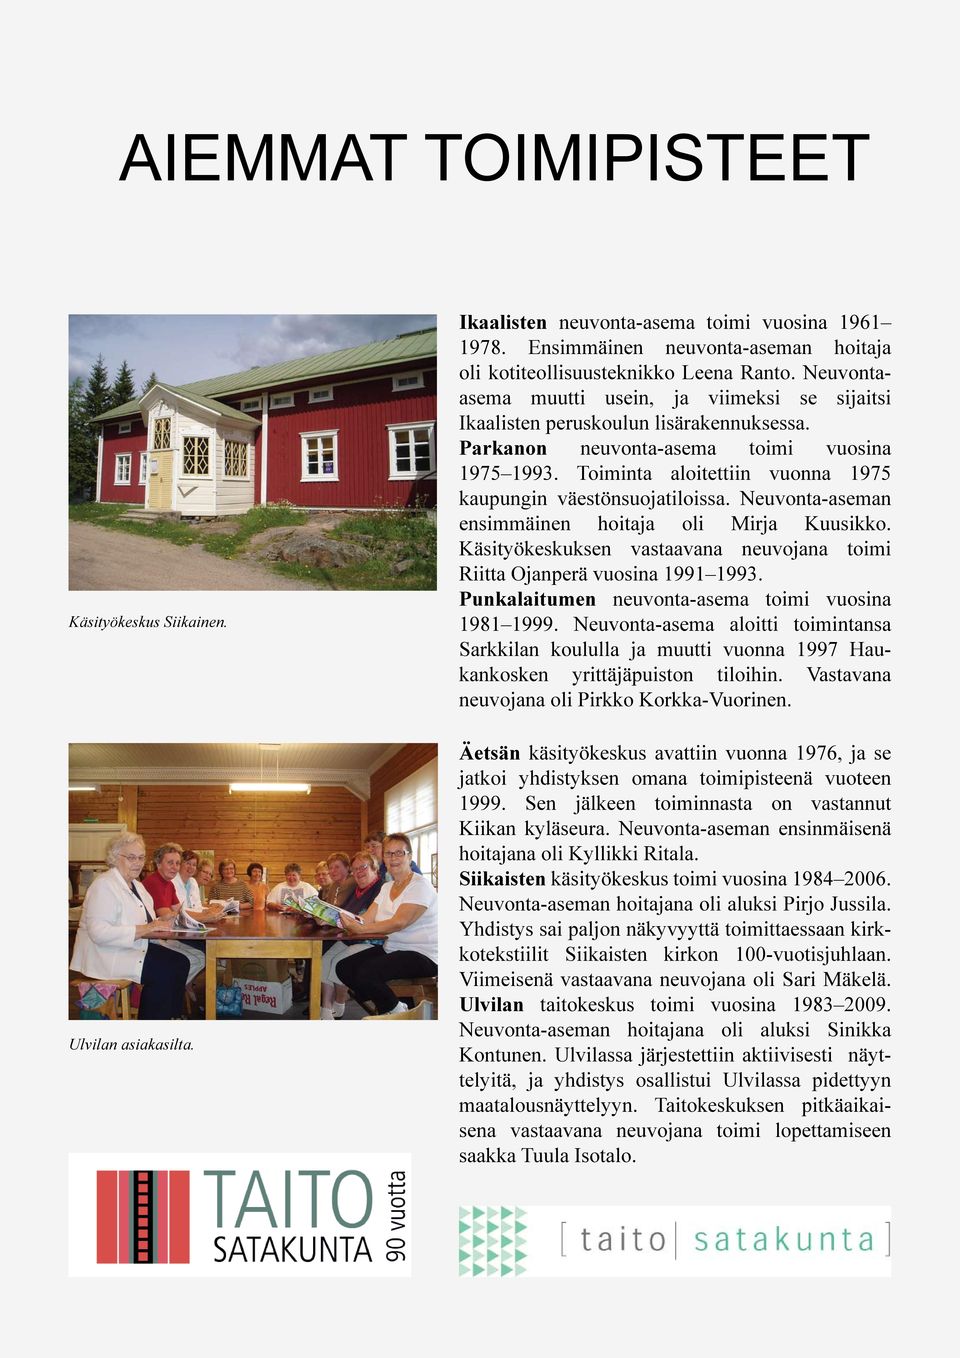 Toiminta aloitettiin vuonna 1975 kaupungin väestönsuojatiloissa. Neuvonta-aseman ensimmäinen hoitaja oli Mirja Kuusikko. Käsityökeskuksen vastaavana neuvojana toimi Riitta Ojanperä vuosina 1991 1993.